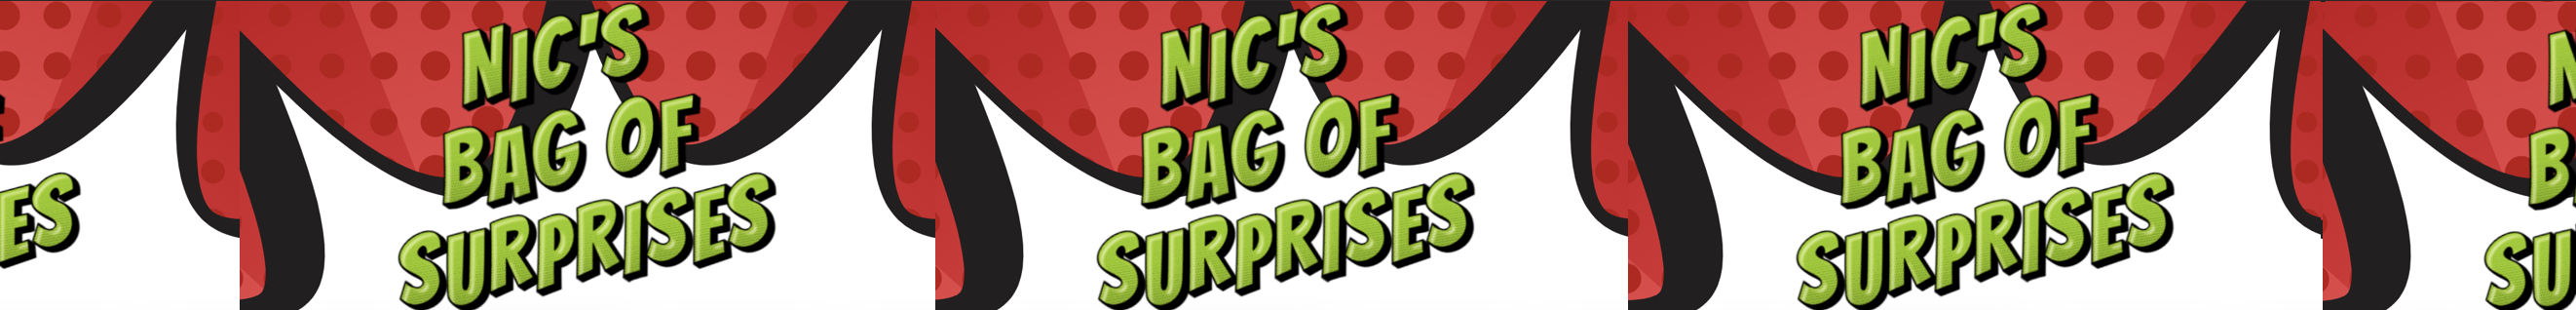 NIC'S LOGIC BAG OF SURPRISES